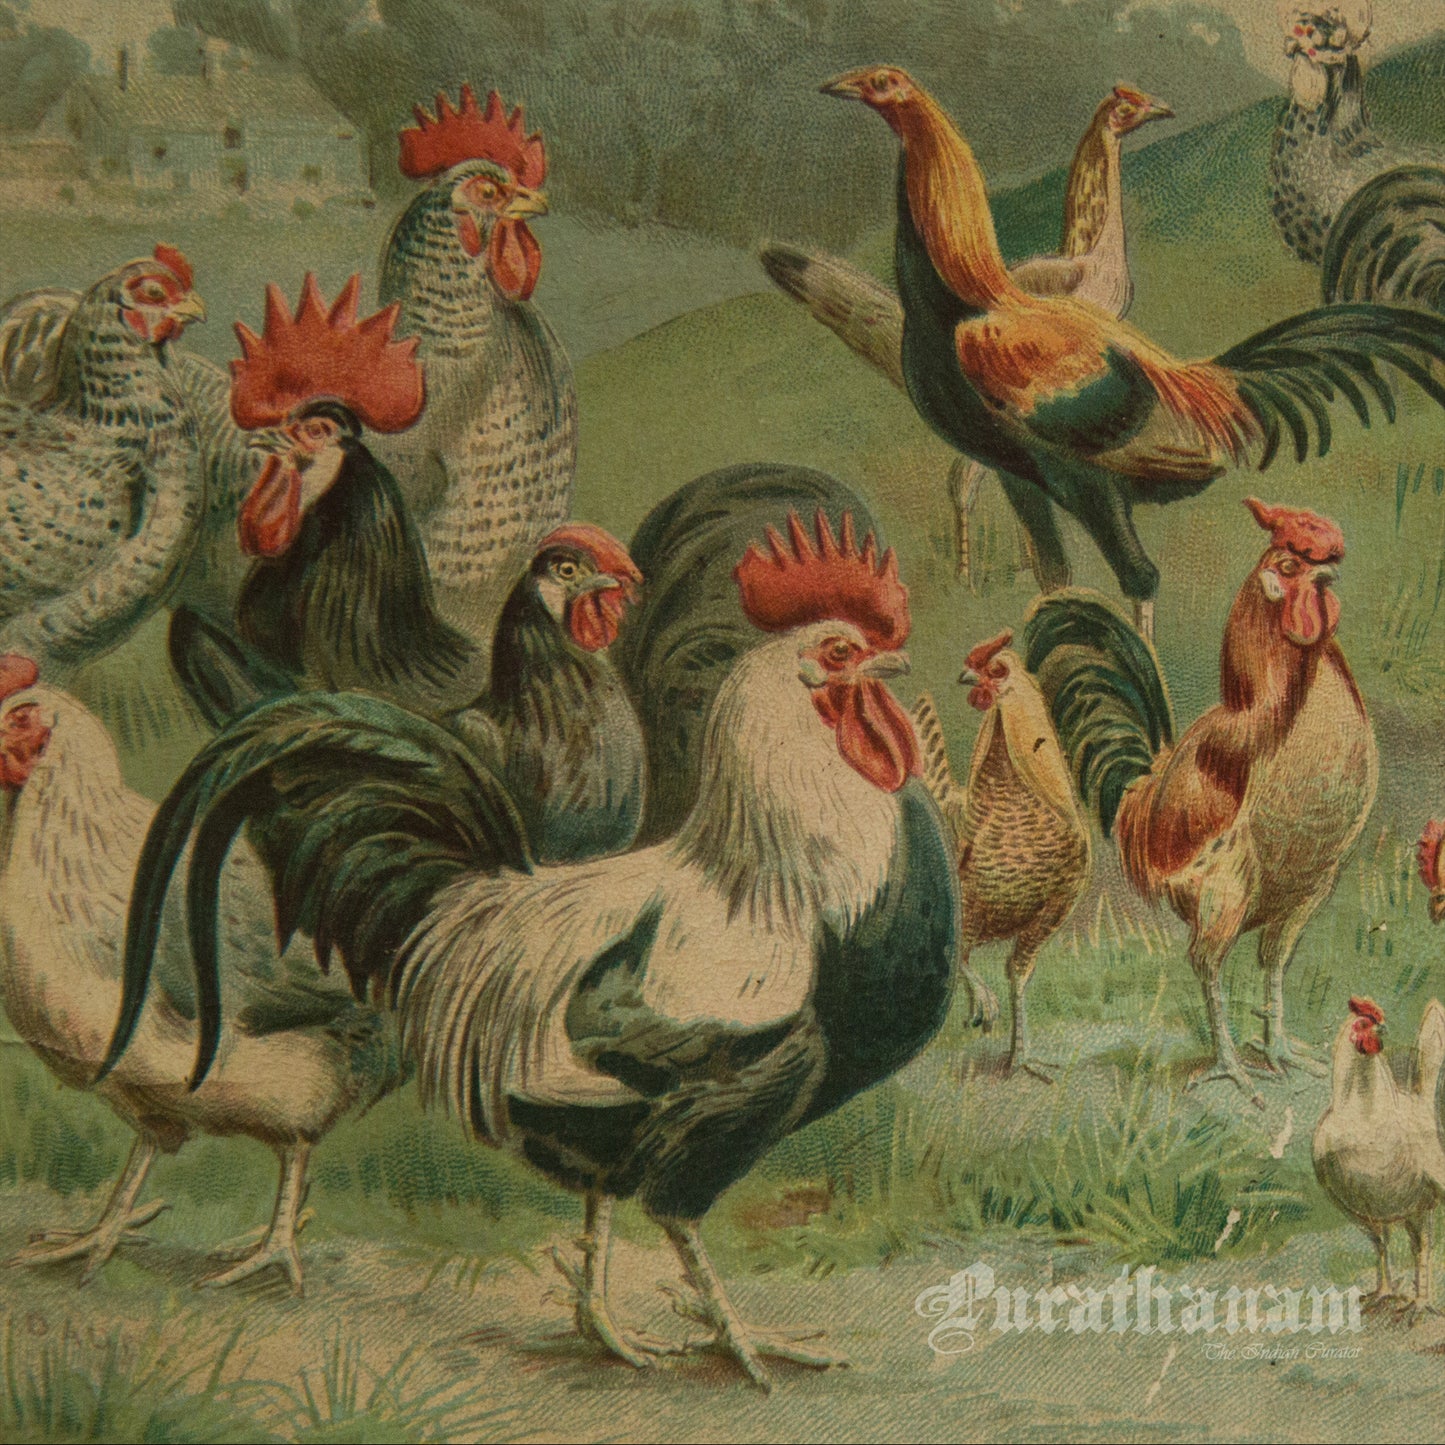 Hens & Cocks - Bird Art / Avian Art - Chromolithograph Print